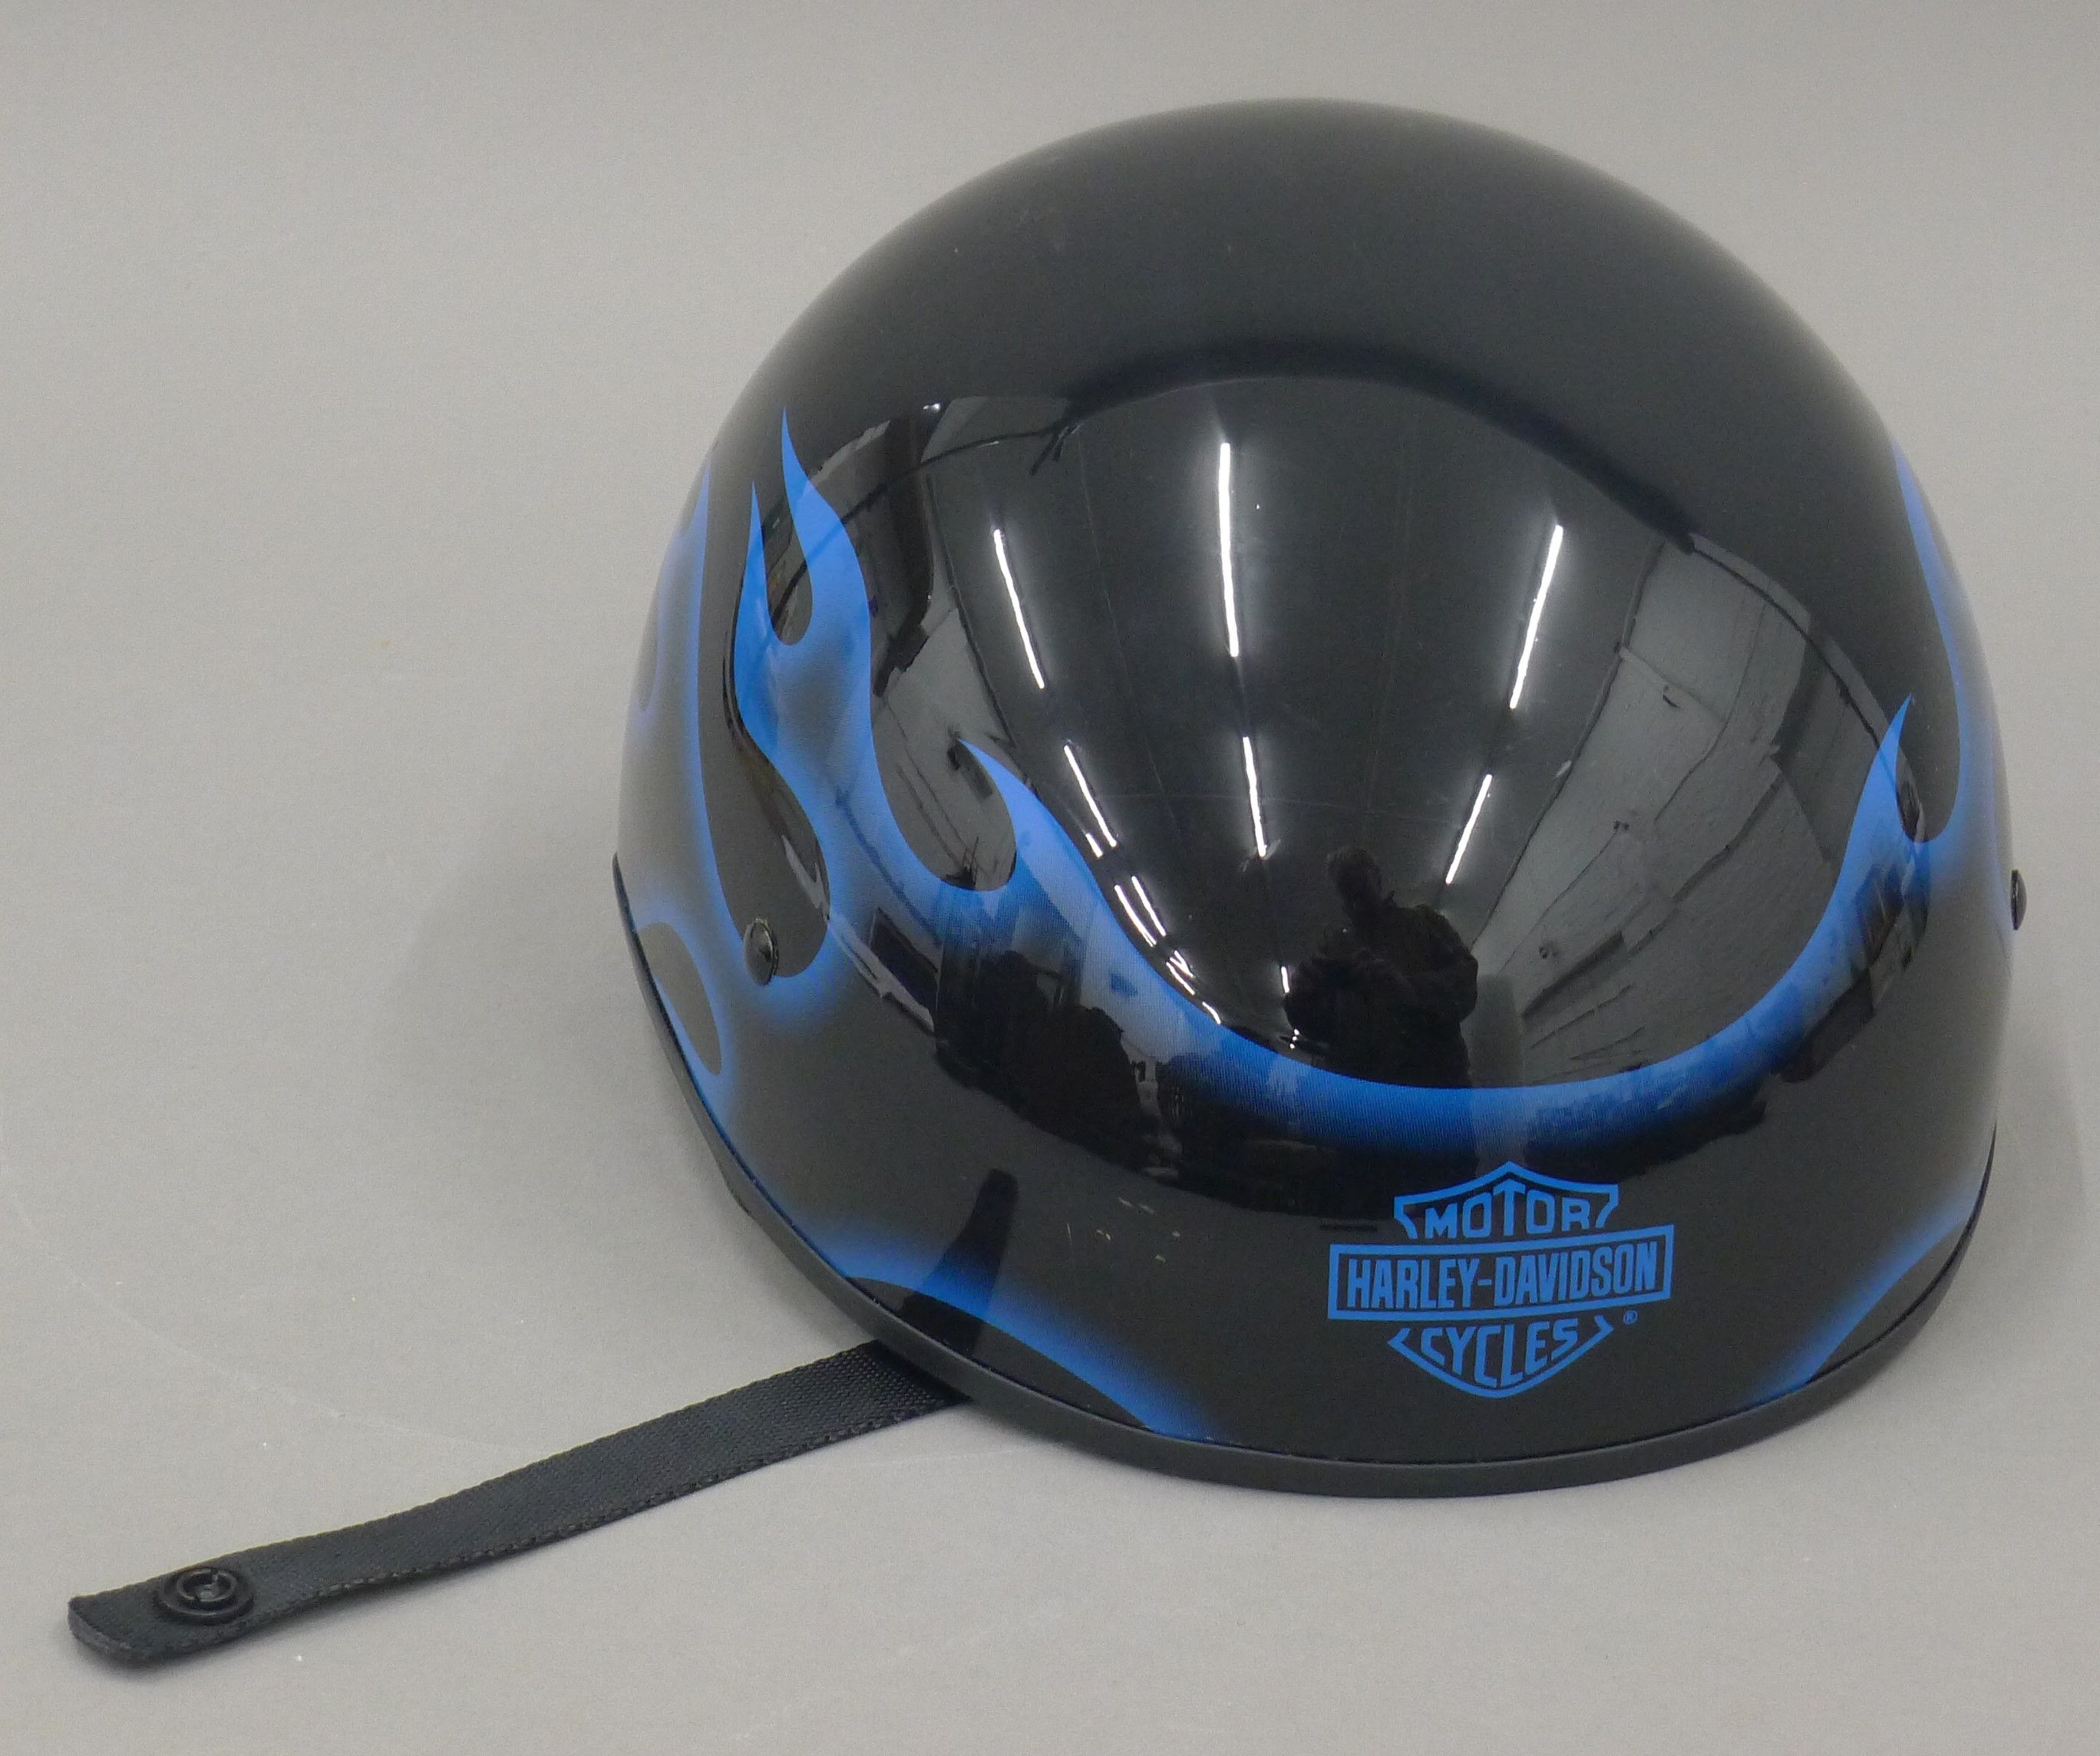 A Harley Davidson helmet. - Image 2 of 3